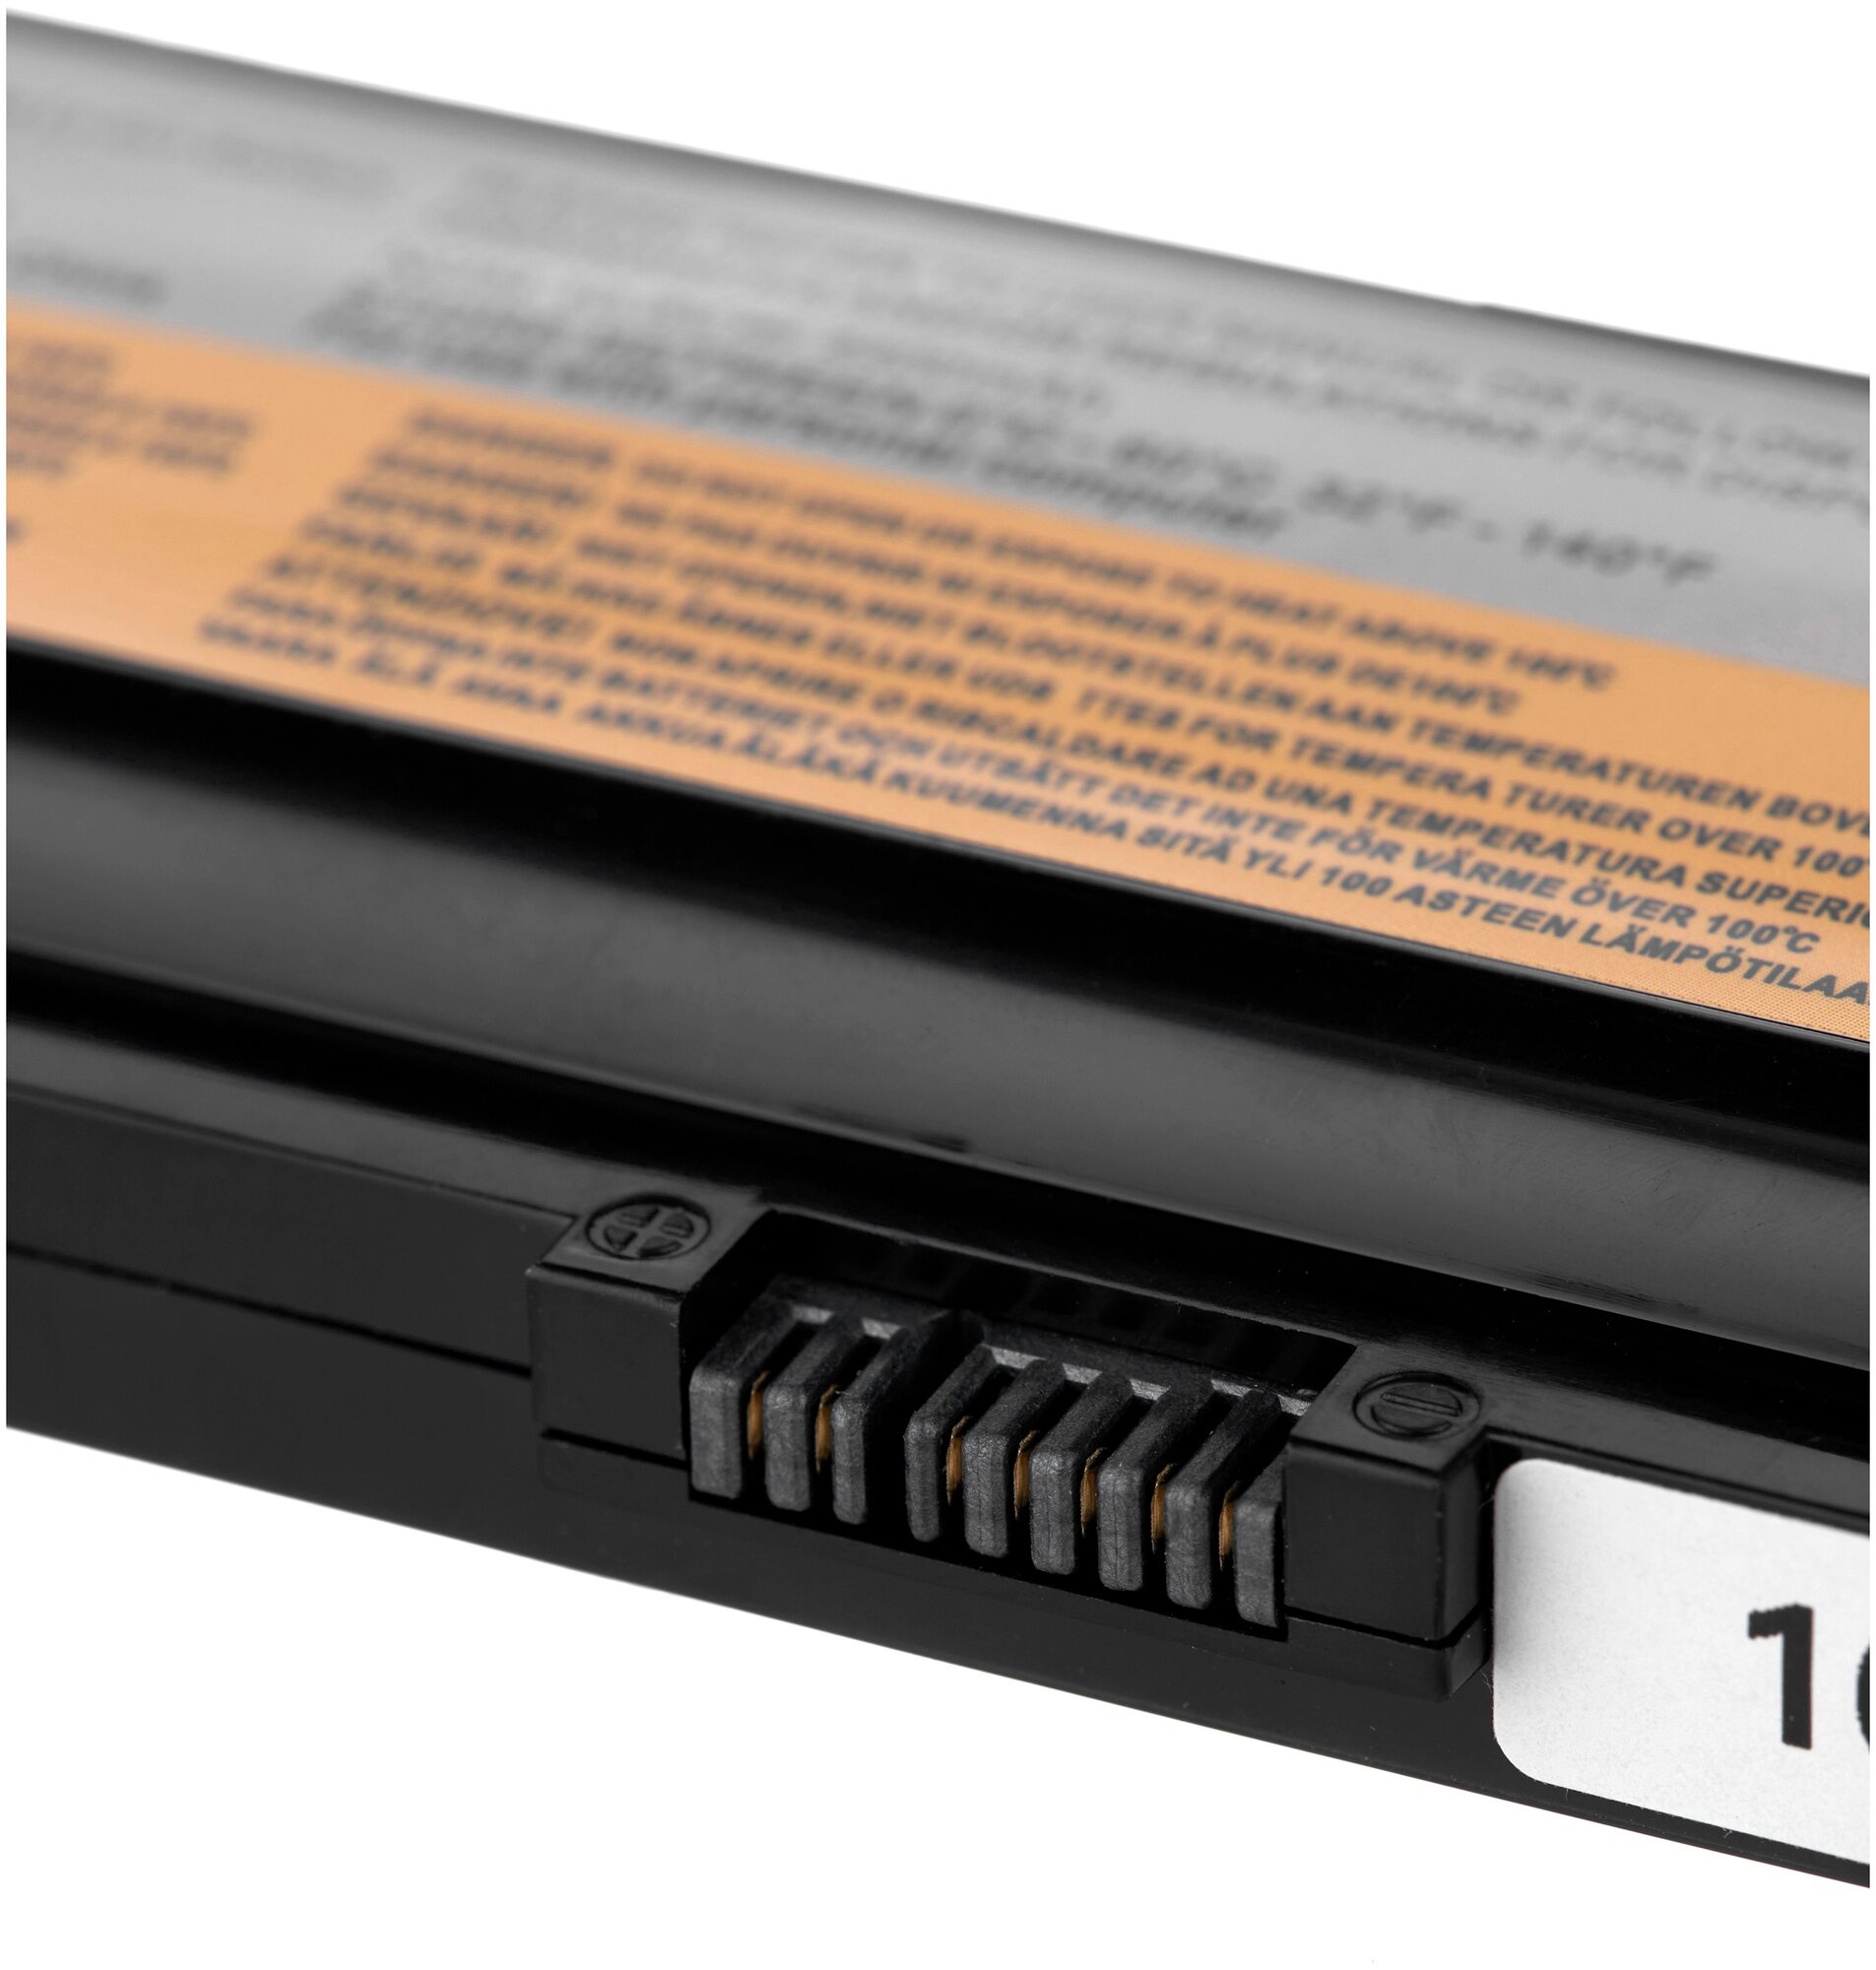 Аккумулятор для ноутбука Lenovo OEM IdeaPad B480, B585, G480, G580, N581, N586, V480, V580, Y480, Series. 10.8V 4400mAh PN: 45N1049, L11L6F01 - фото №4